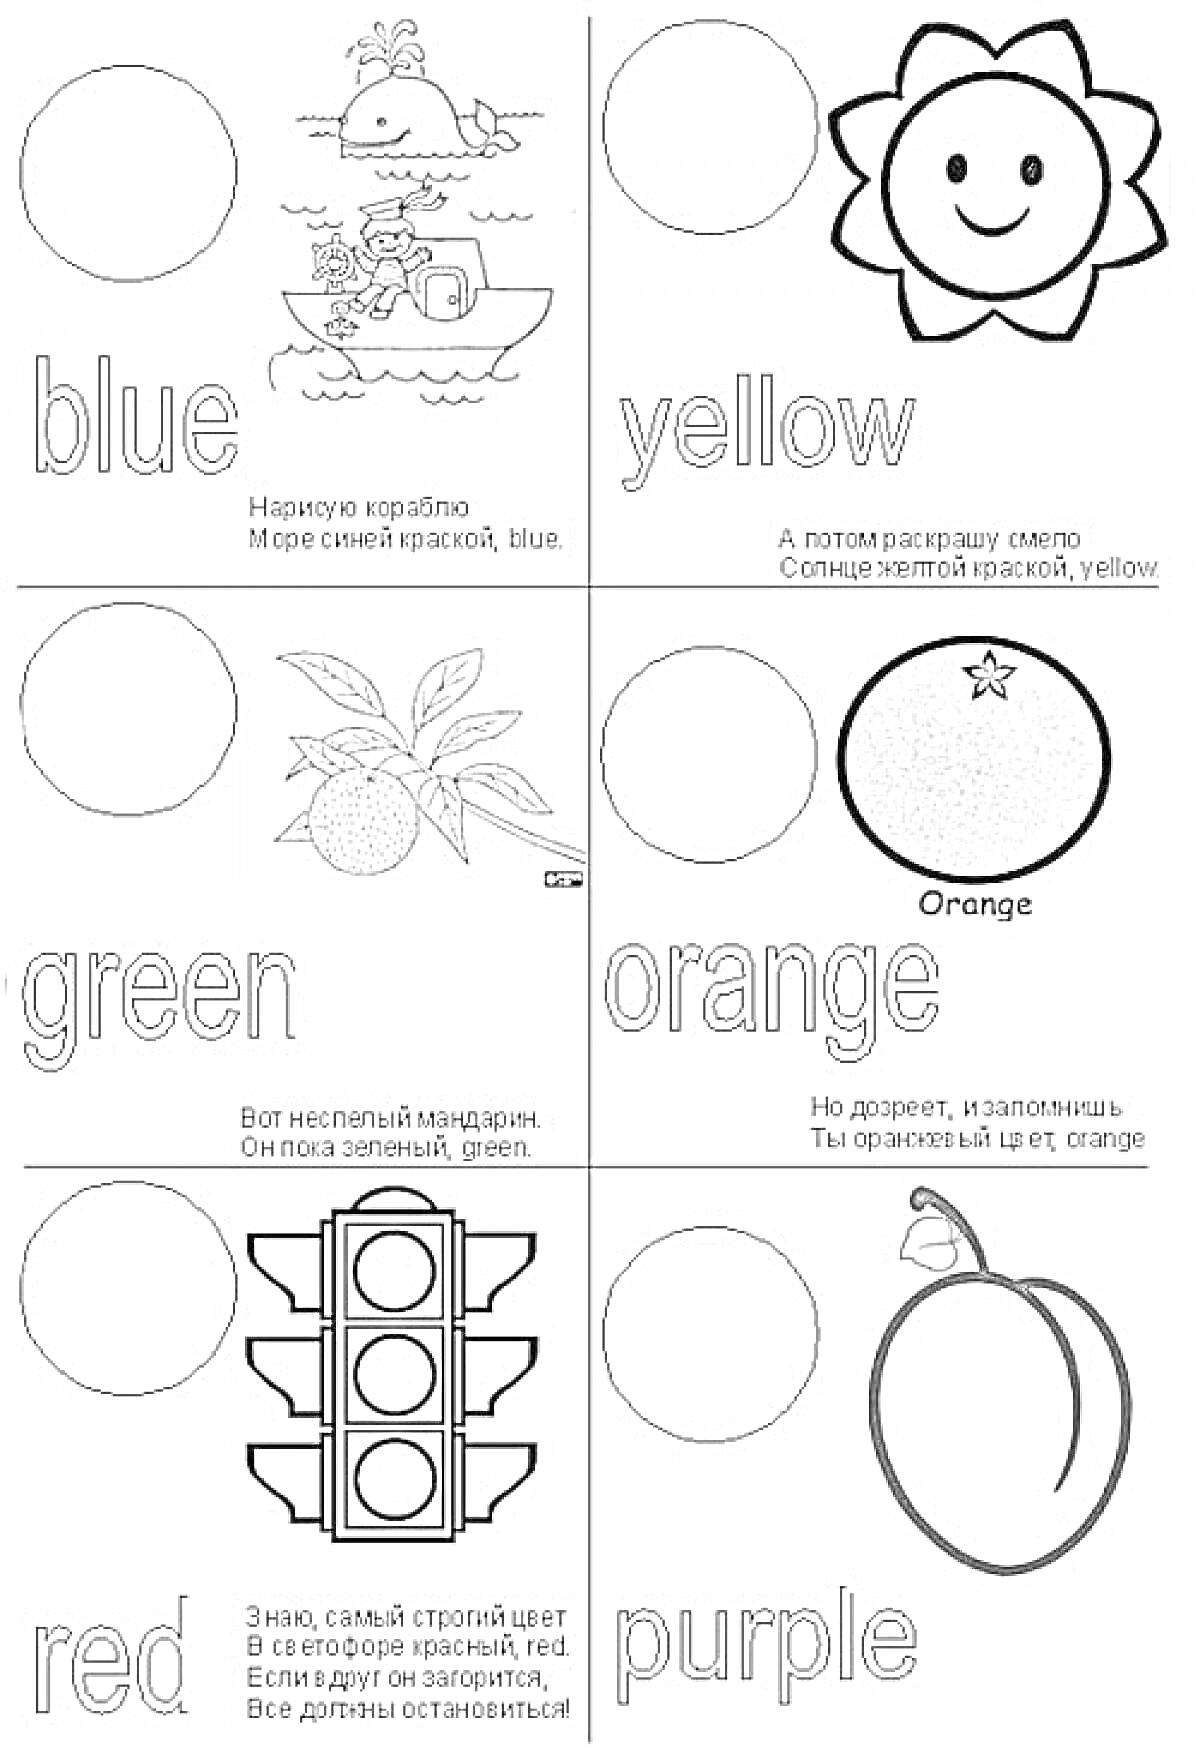 Раскраска с названиями цветов на английском языке и соответствующими объектами: корабль (blue), солнце (yellow), апельсин (orange), светофор (red), груша (purple), мандарин (green)